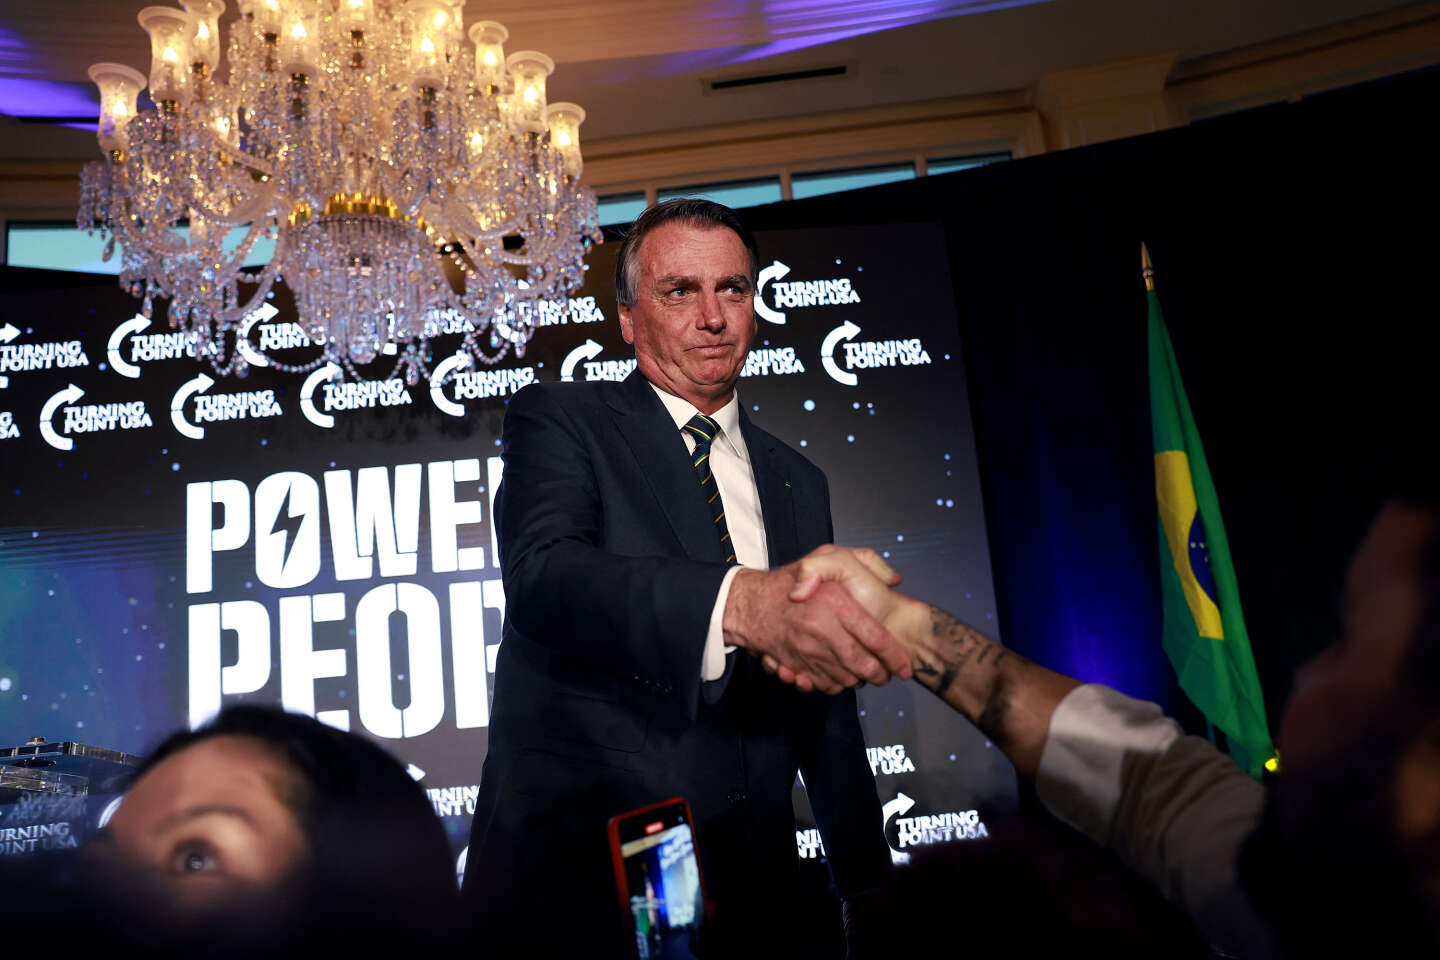 L’étau judiciaire se resserre autour de Jair Bolsonaro, exilé aux Etats-Unis